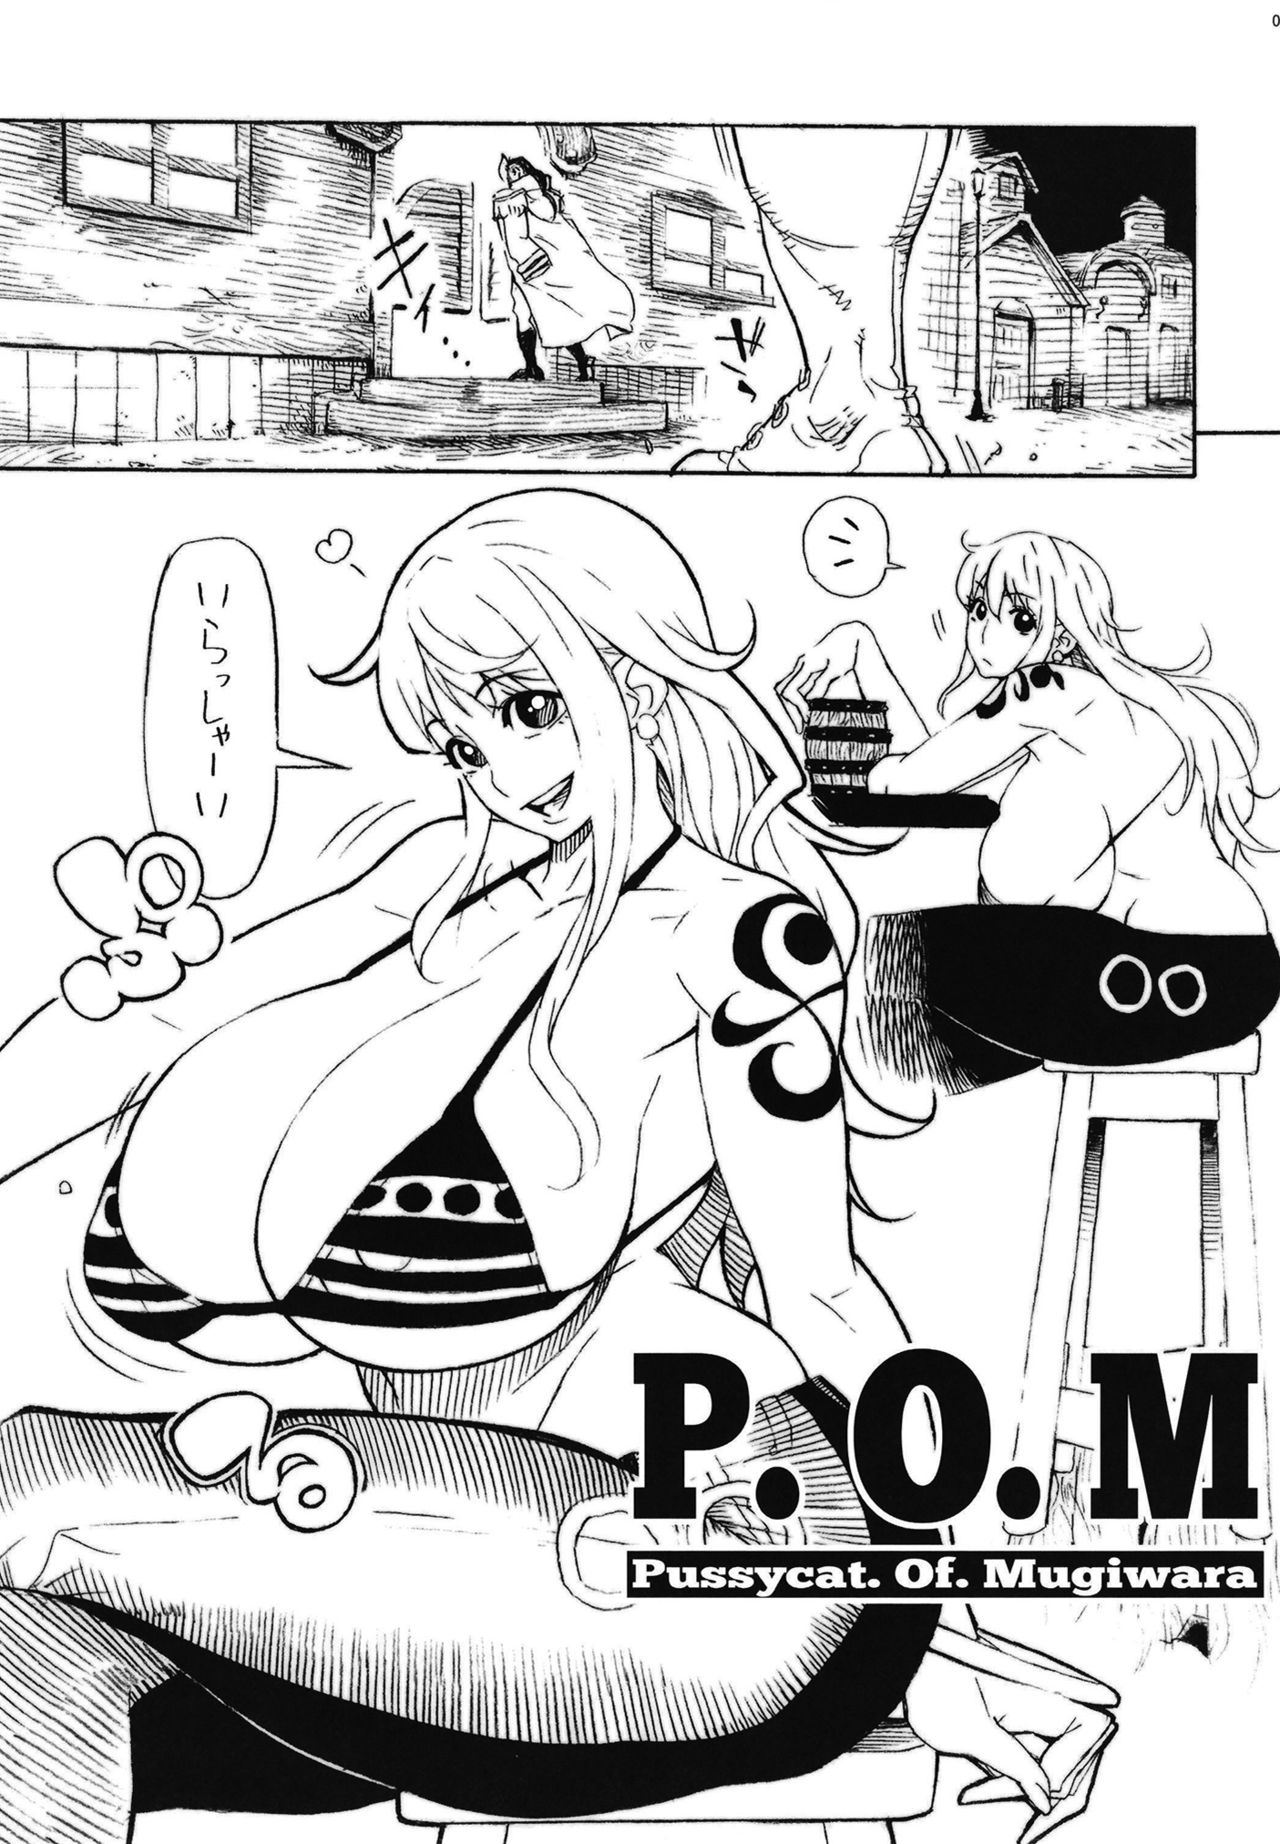 【ワンピース】女海賊たちが売春したりレイプされたりするドスケベ総集本♡の画像4枚目